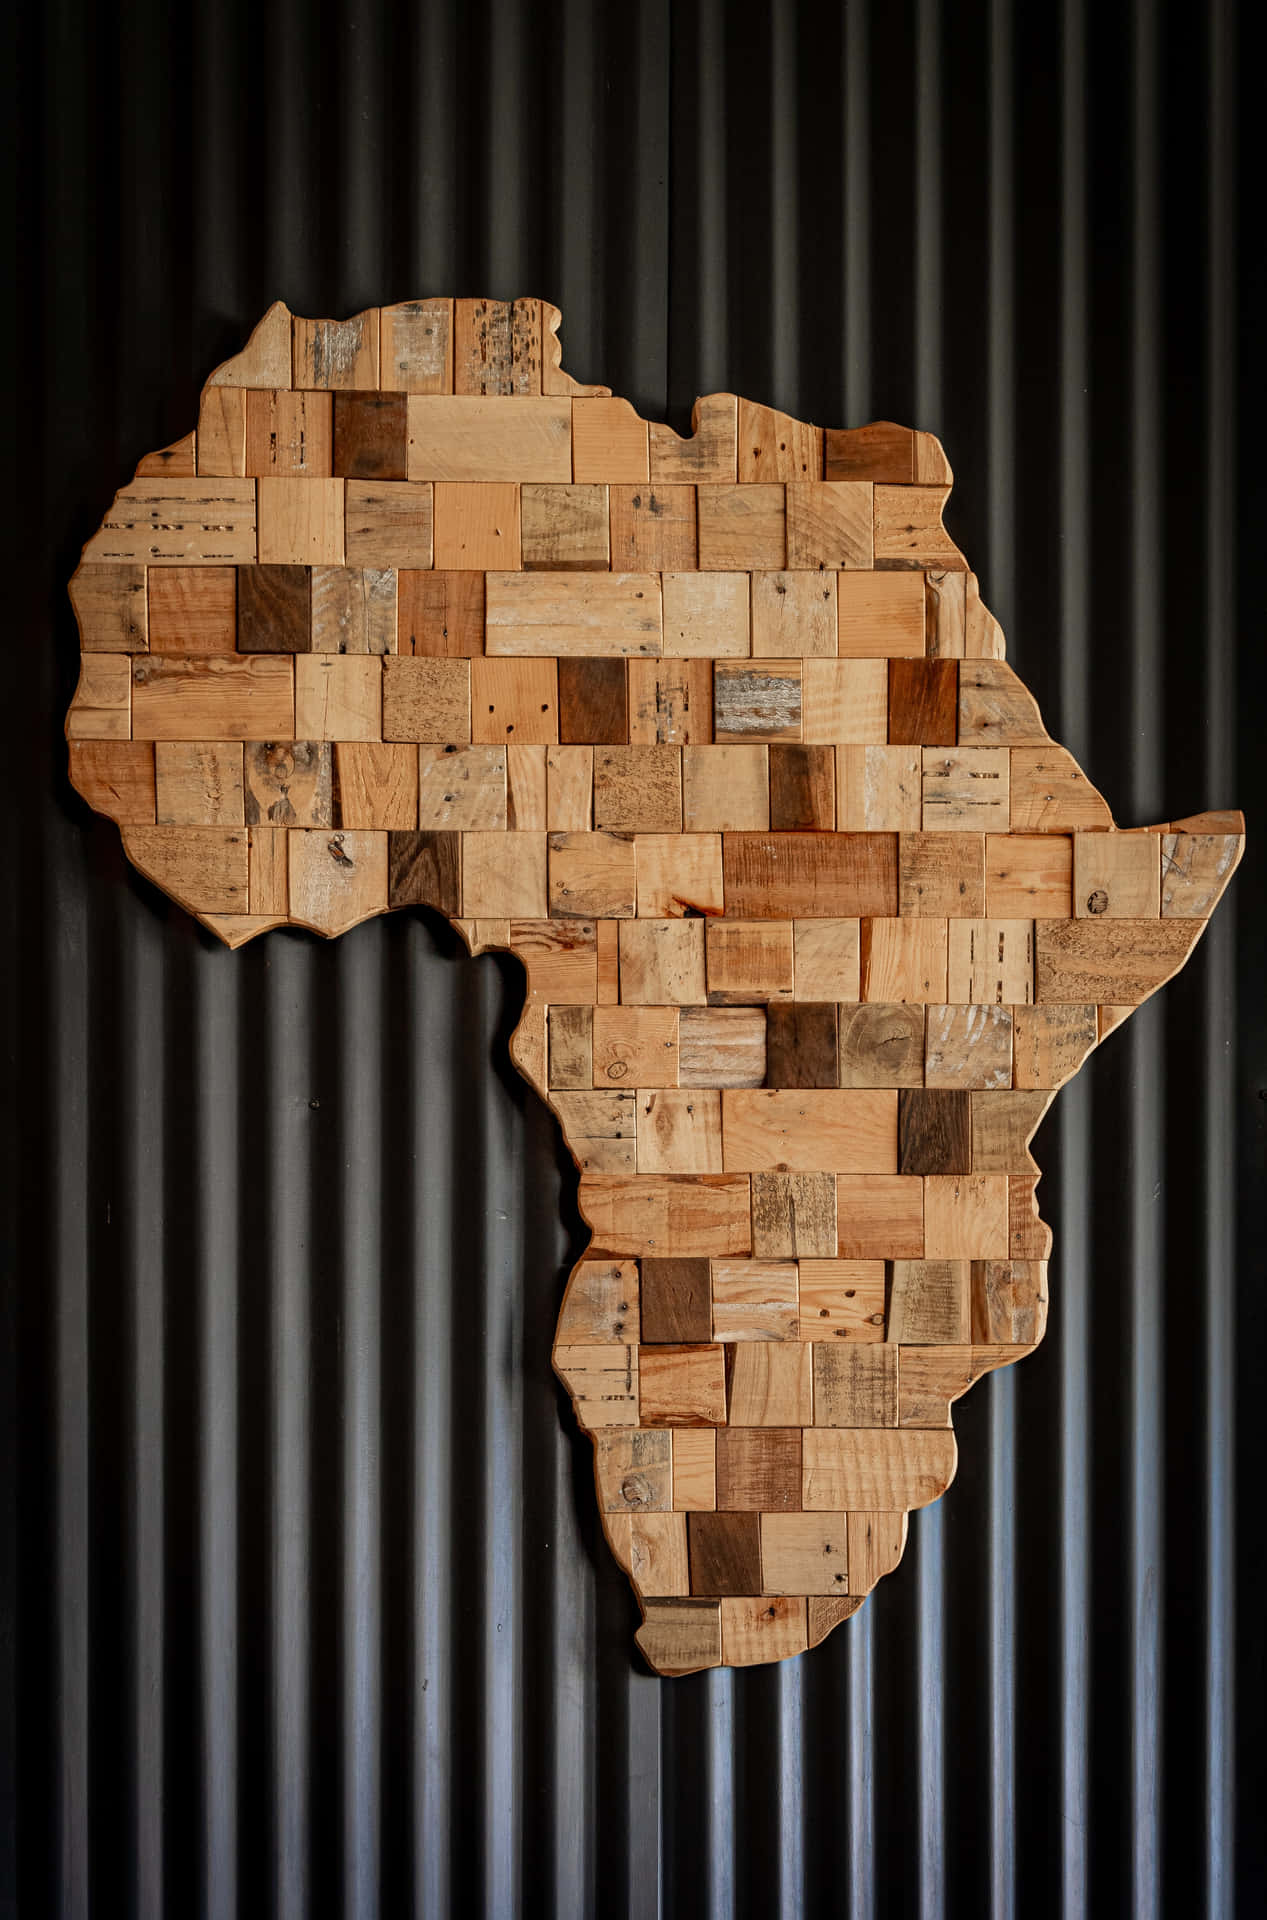 Afrikabakgrundsbild.